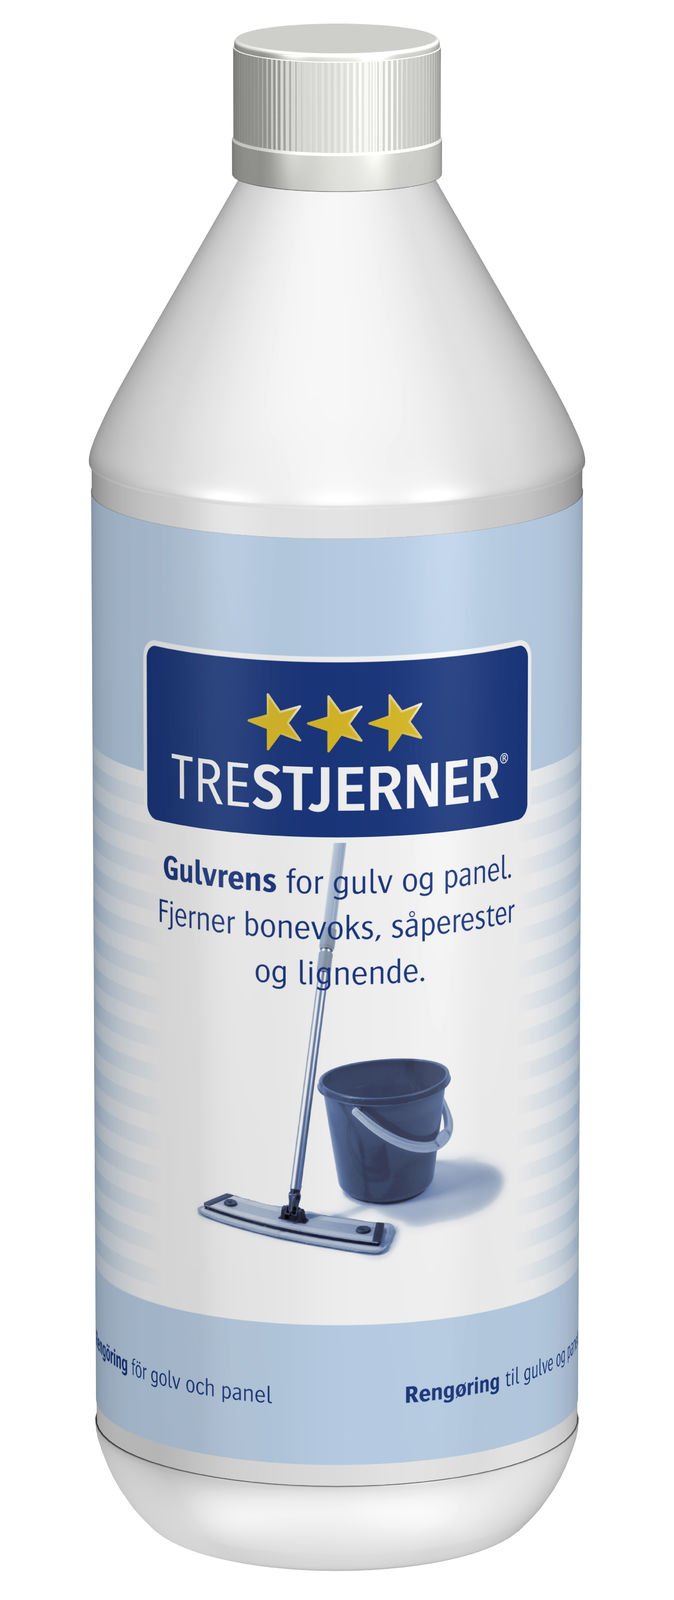 Trestjerner Gulvrens - Malprivat.dk